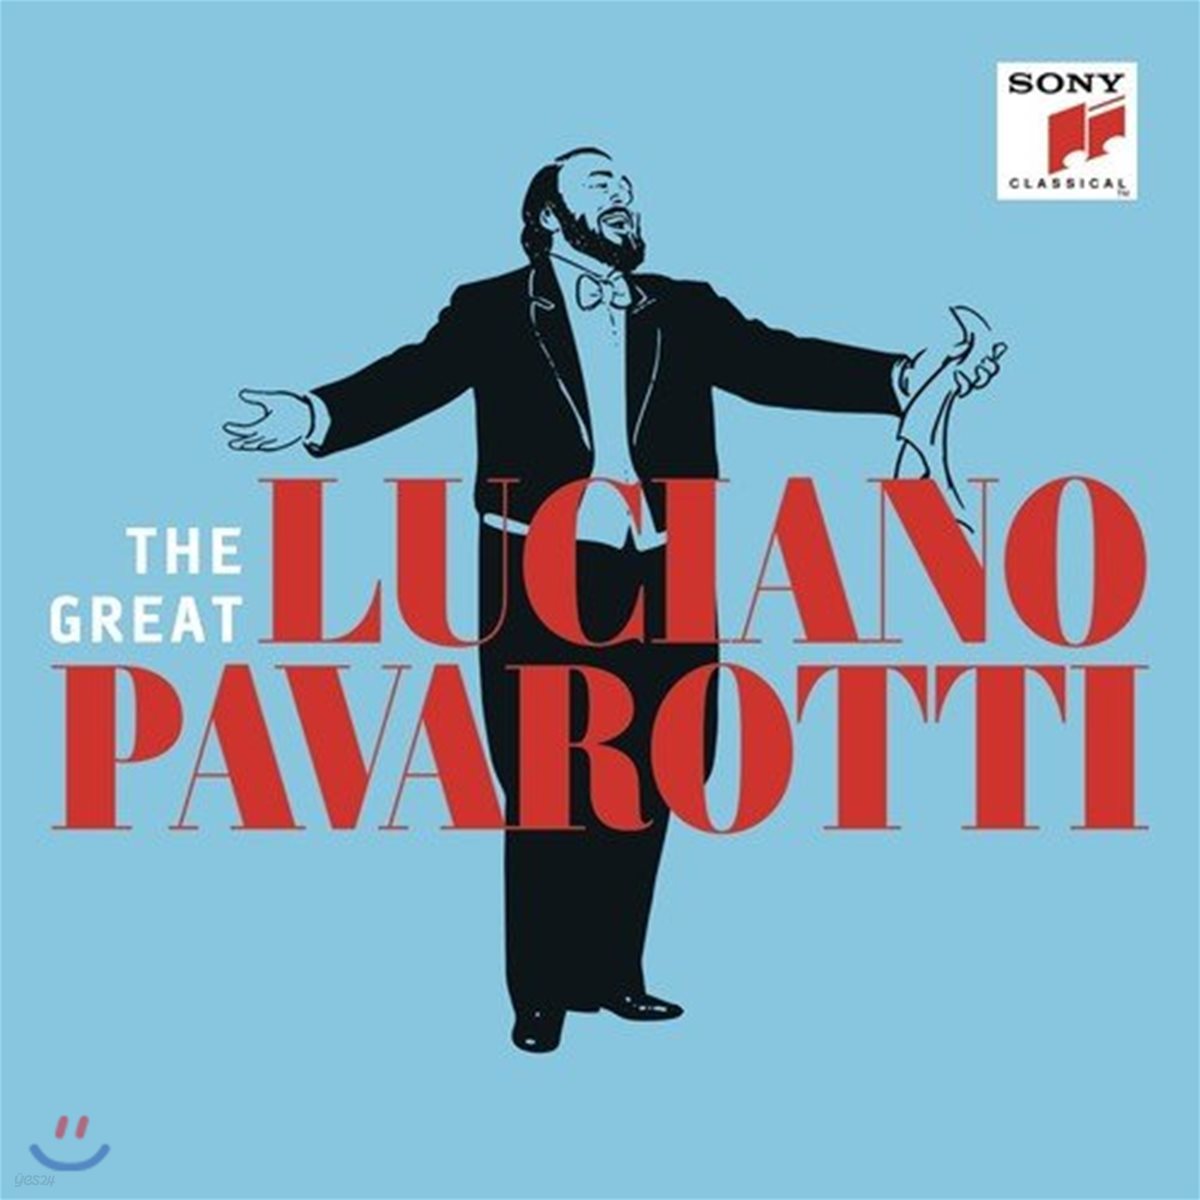 그레이트 루치아노 파바로티 - 베스트 앨범 (The Great Luciano Pavarotti)